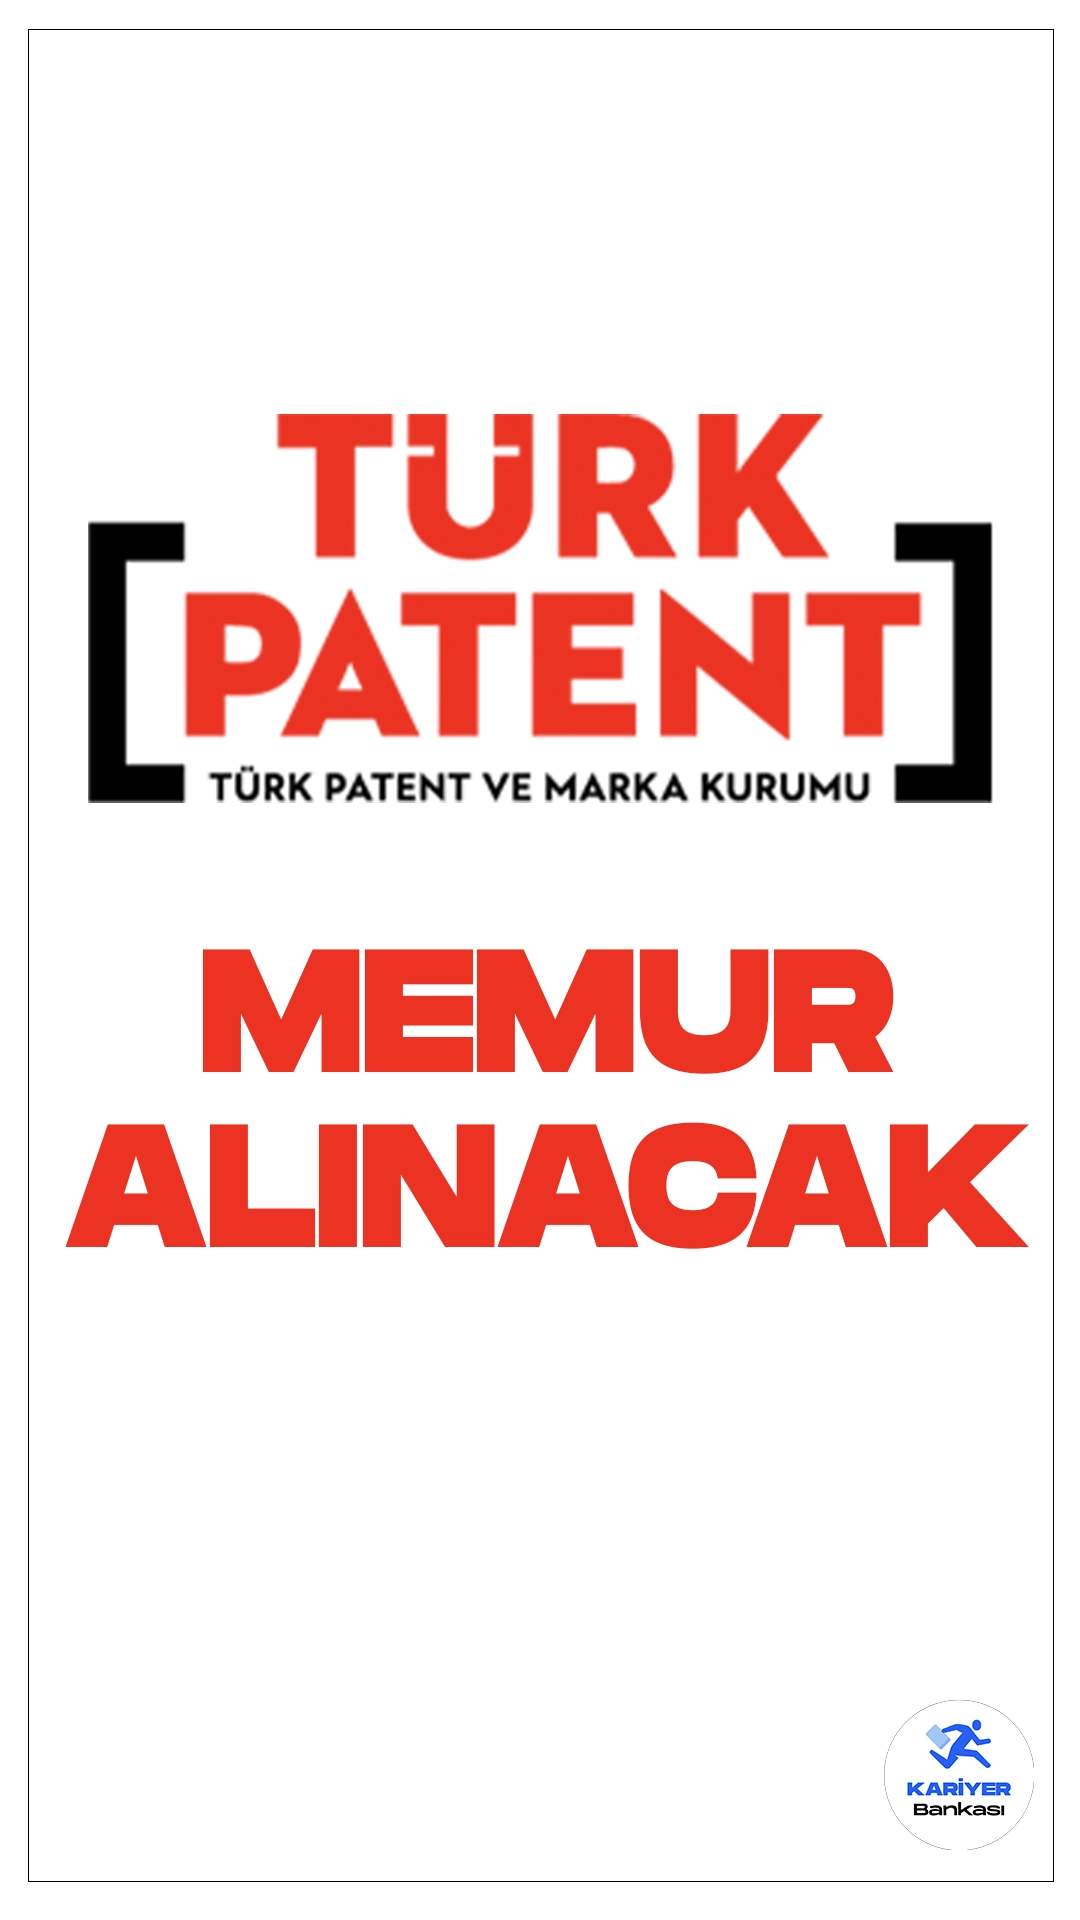 Türk Patent ve Marka Kurumu memur alımı yapacak. İlgili alım duyurusunda, "Türk Patent ve Marka Kurumu Sınai Mülkiyet Uzmanlığı Yönetmeliği hükümleri uyarınca Kurumumuzda Sınai Mülkiyet Uzmanı olarak yetiştirilmek üzere, sözlü giriş sınavı ile aşağıda bölümü, unvanı, sınıfı, derecesi, kadro sayısı, KPSS puan türü ve taban puanı ile YDS taban puanı belirtilen toplam 30 (otuz) adet Sınai Mülkiyet Uzman Yardımcısı kadrosuna personel alınacaktır." ifadeleri yer aldı.